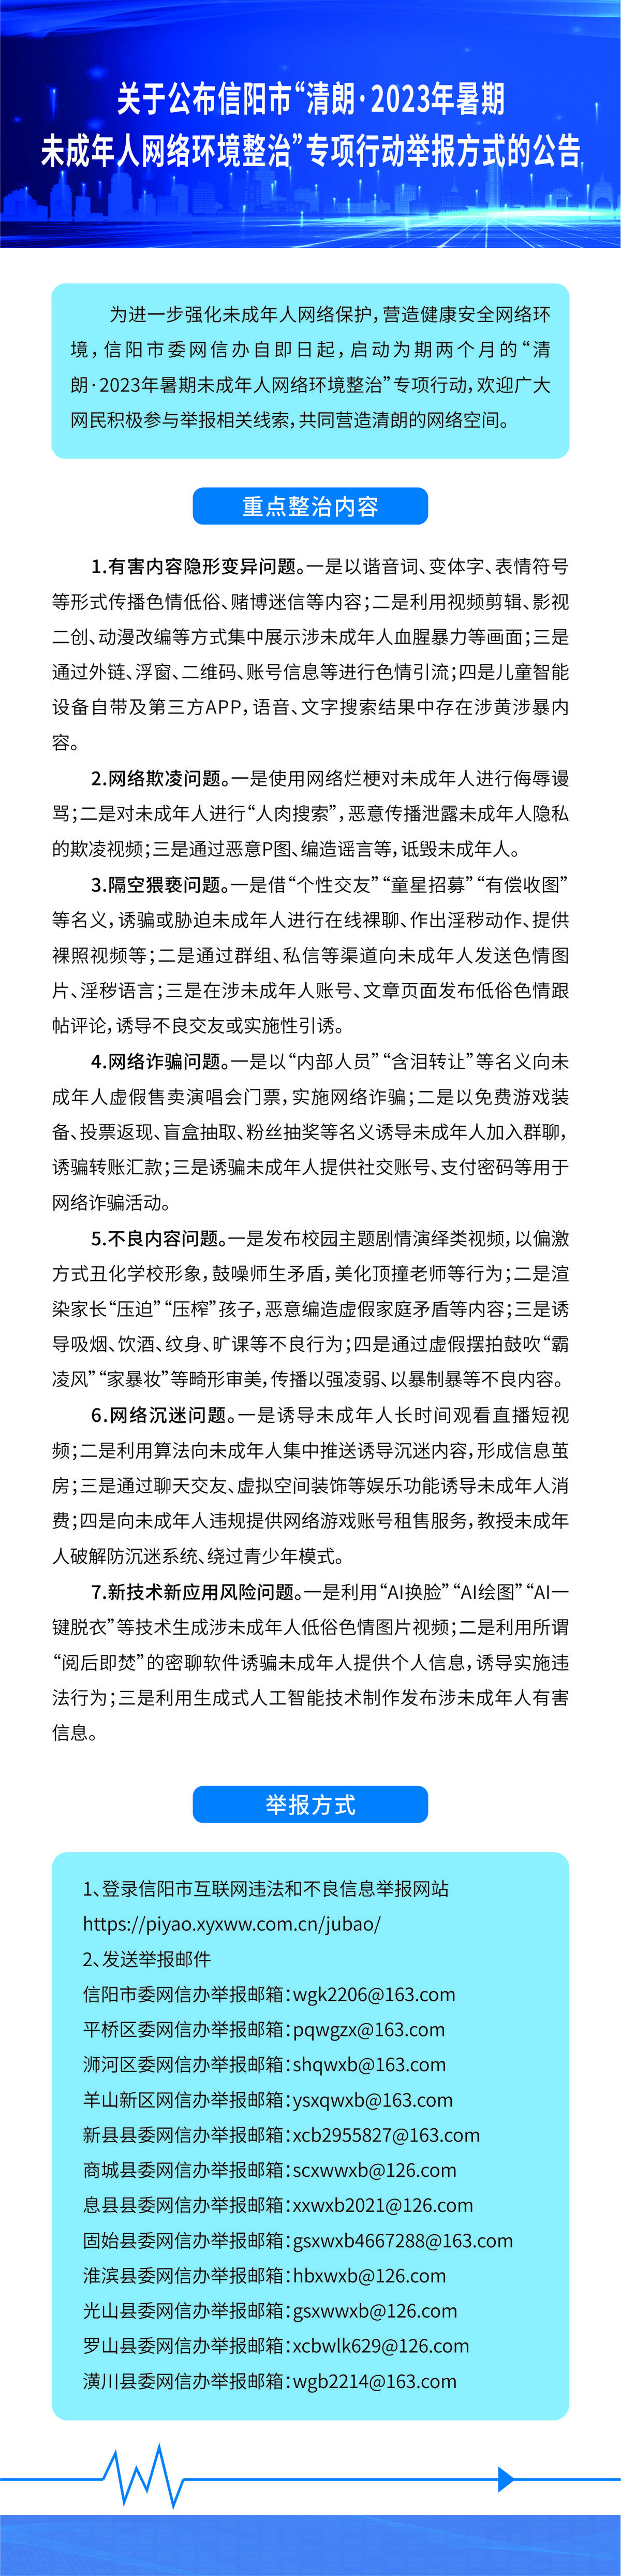 关于公布信阳市“清朗·2023年暑期未成年人网络环境整治”专项行动举报方式的公告